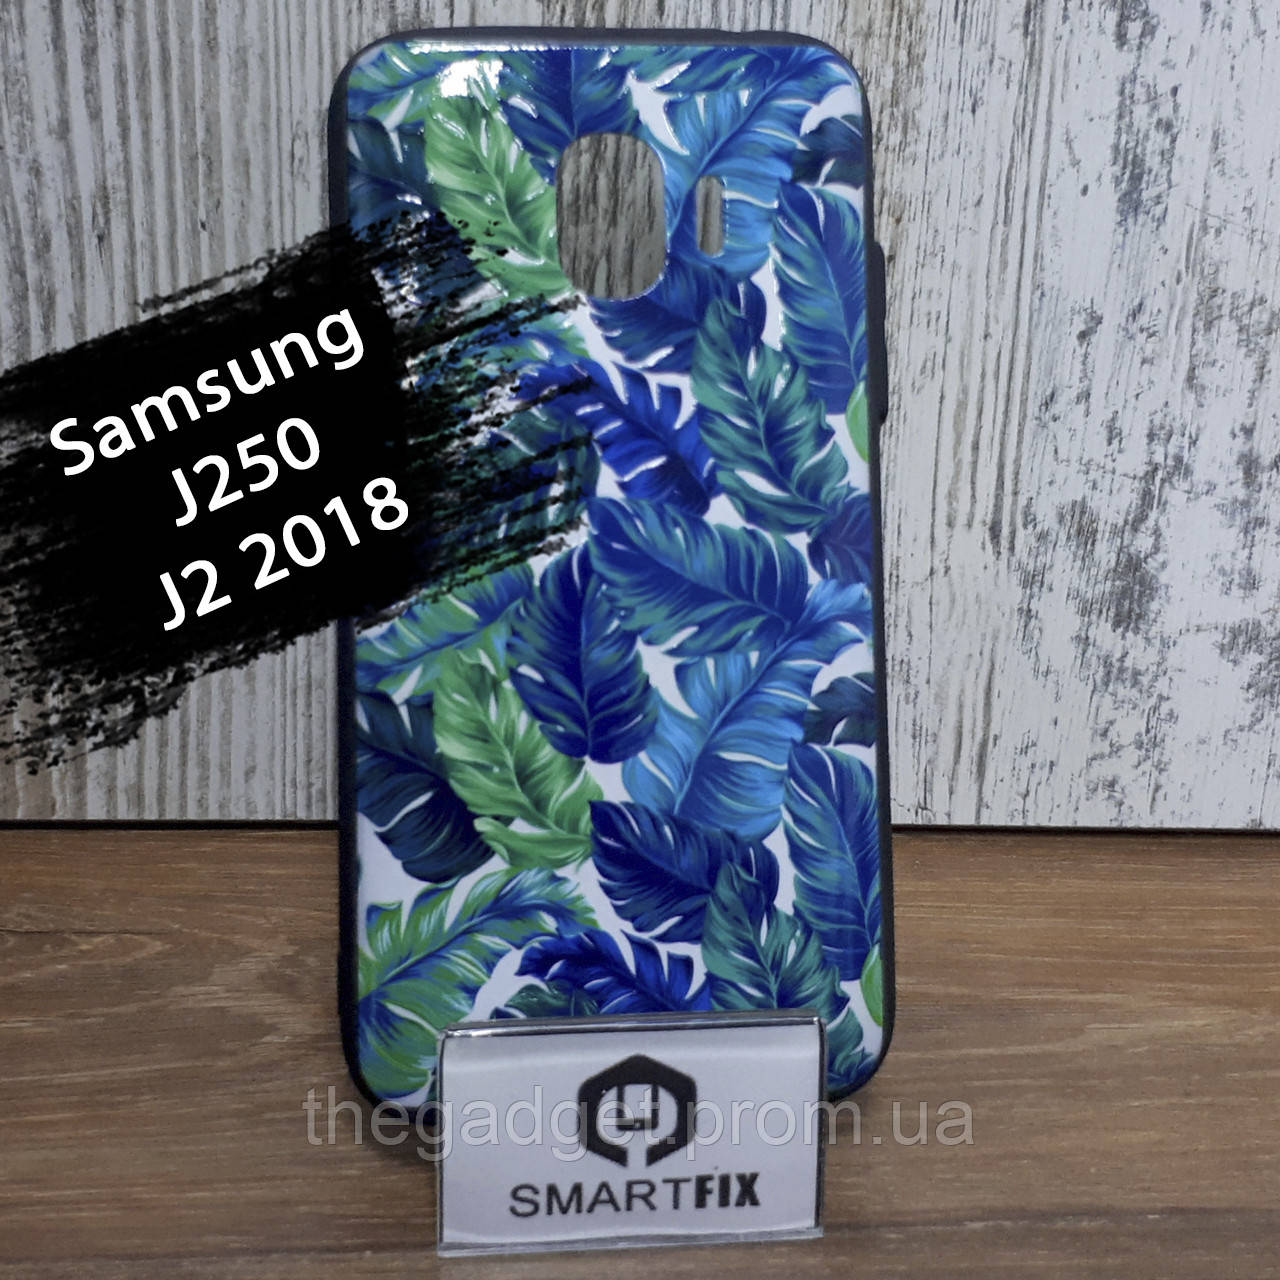 Чехол с рисунком для Samsung J2 2018 (J250)